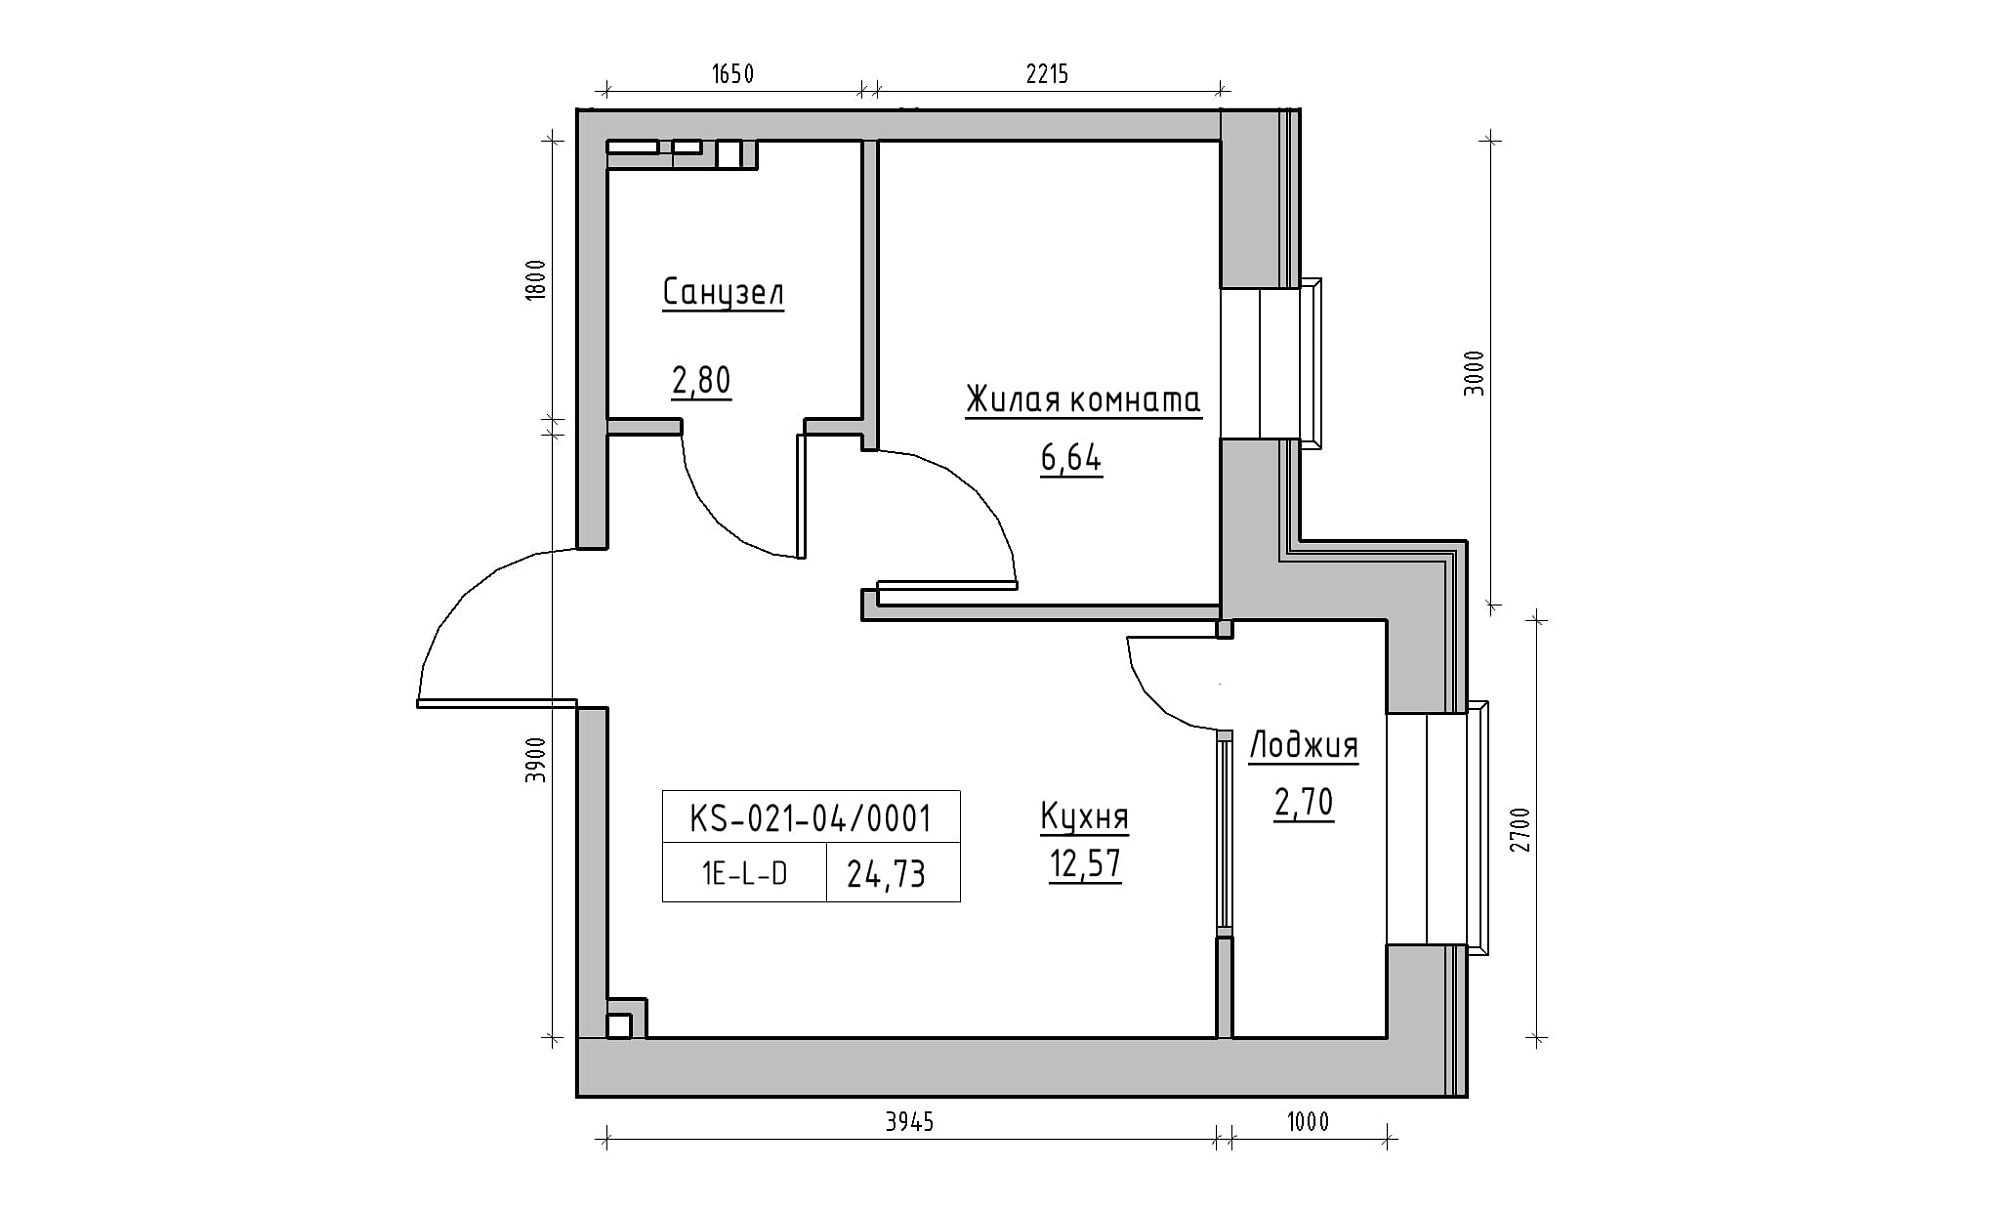 Планування 1-к квартира площею 24.73м2, KS-021-04/0001.